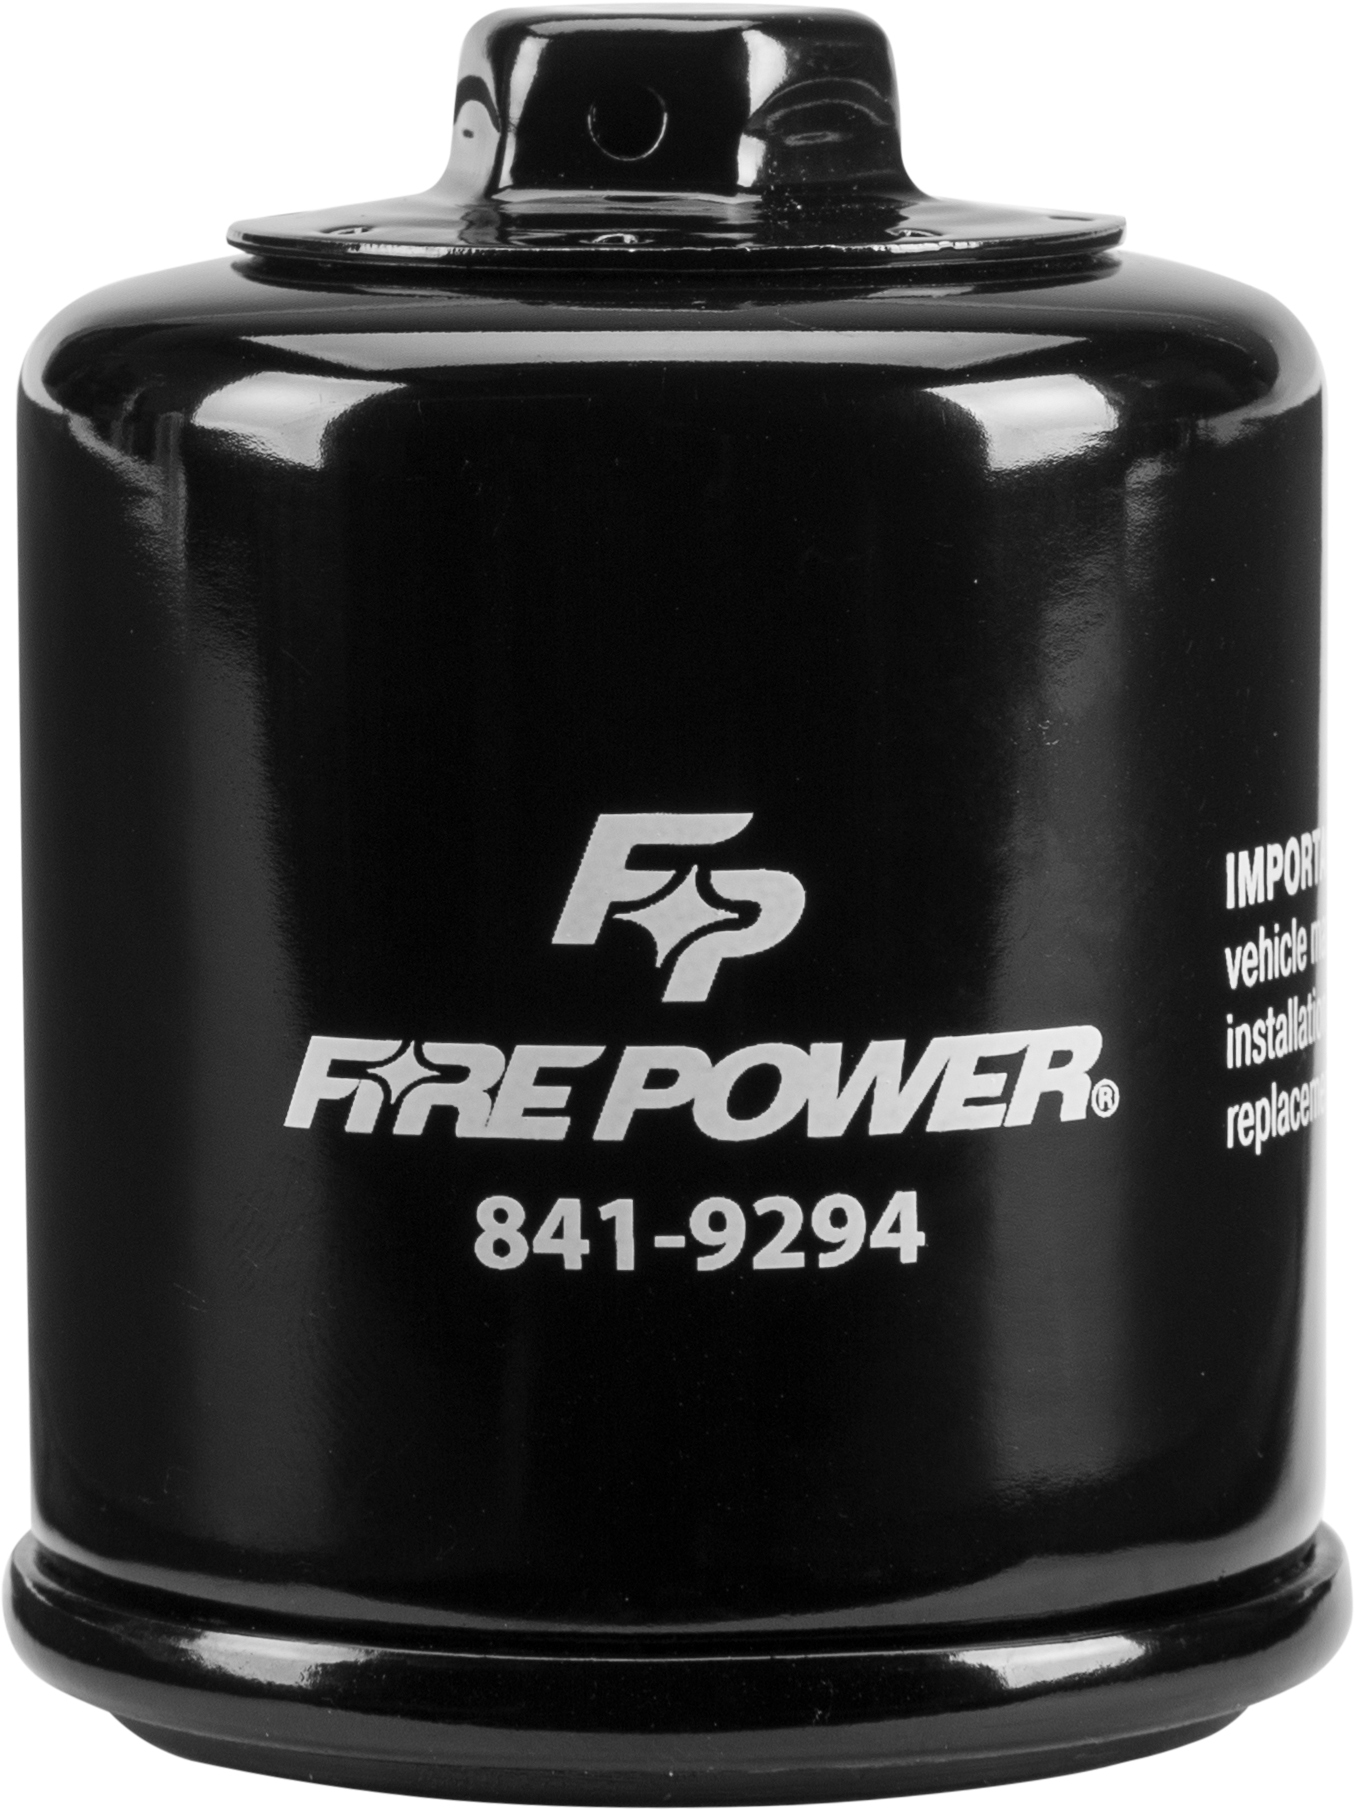 Fire Power - Oil Filter